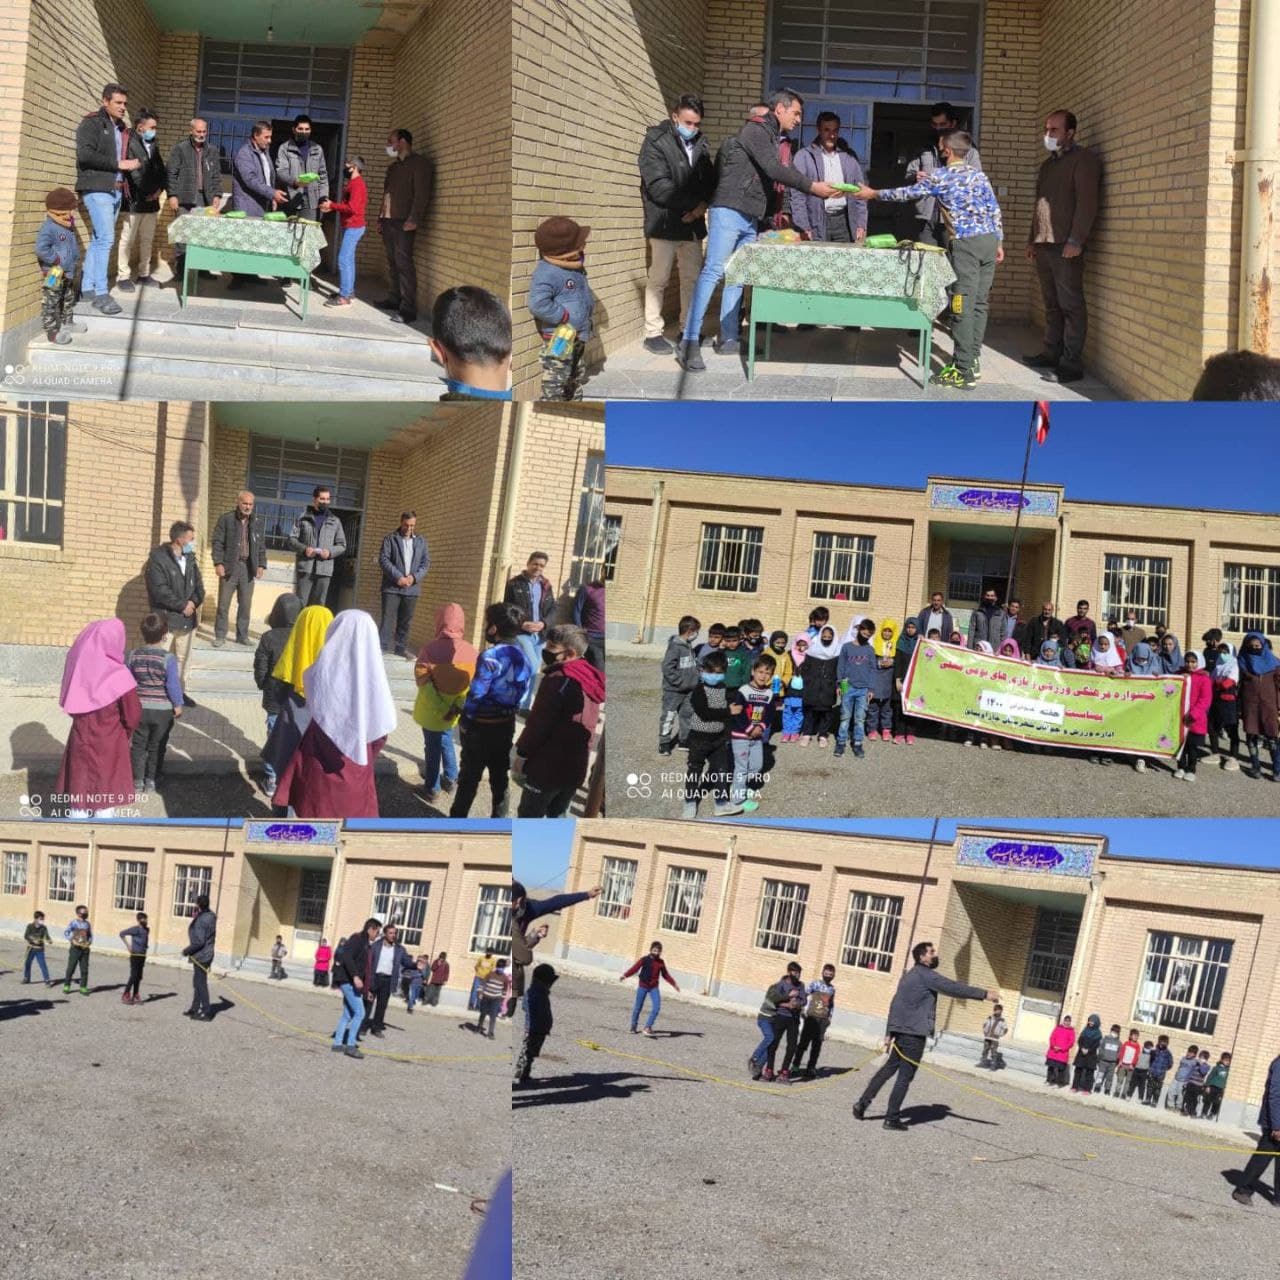 گزارش تصویری/ جشنواره فرهنگی ورزشی بازی های بومی و محلی در روستای خواجه شاهی شهرستان چاراویماق